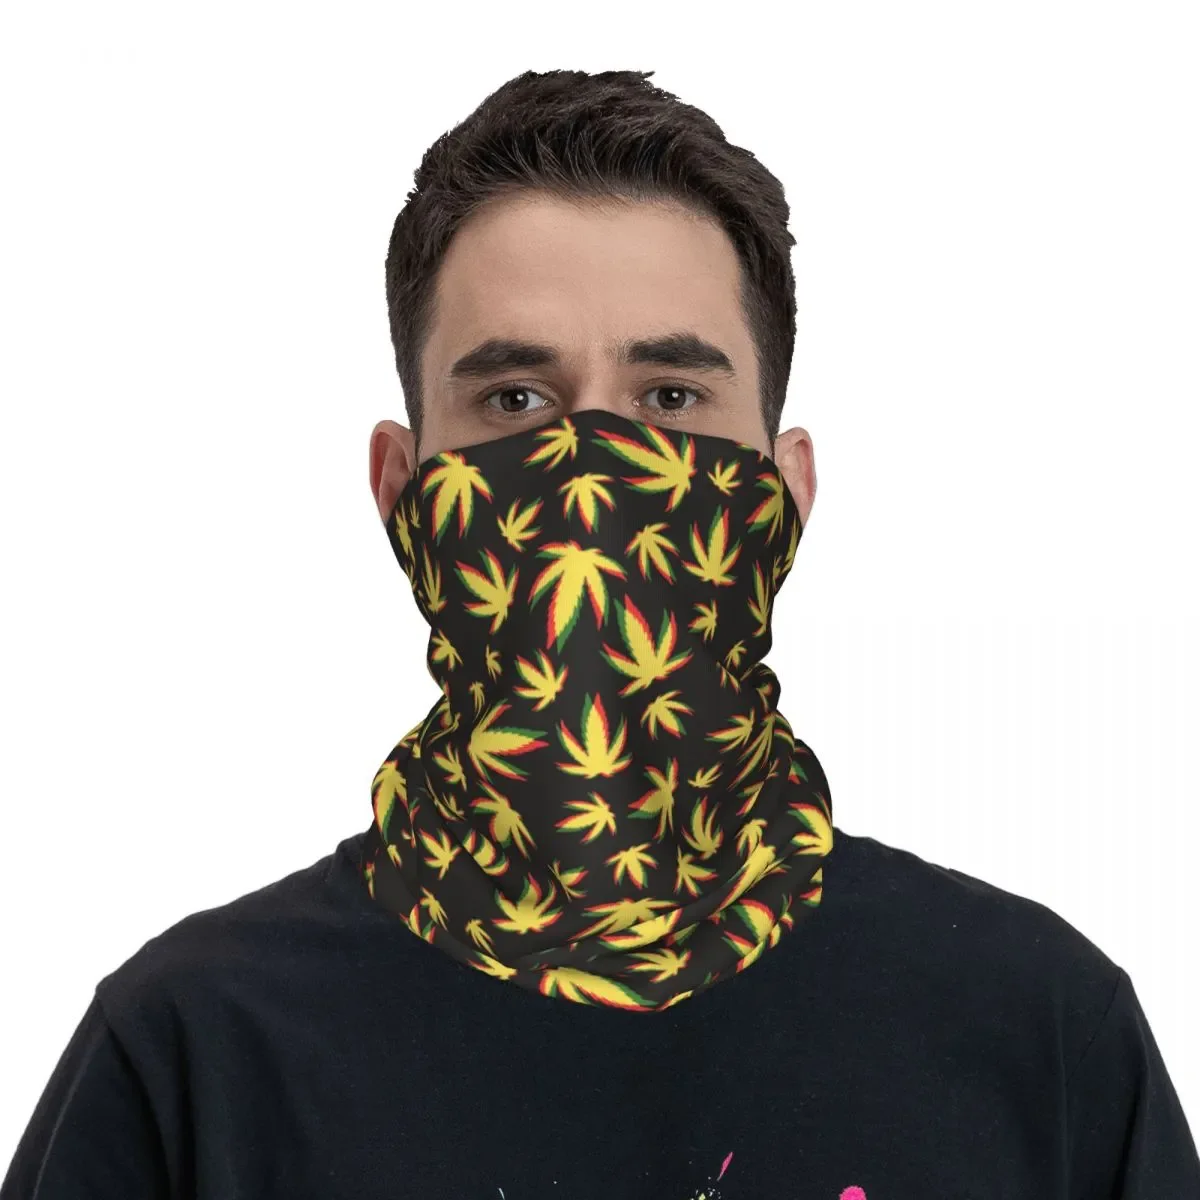 

Бандана с рисунком марихуаны, иллюзия, накидка на шею, Искусственный шарф с Кленовым листом, многофункциональная маска для лица